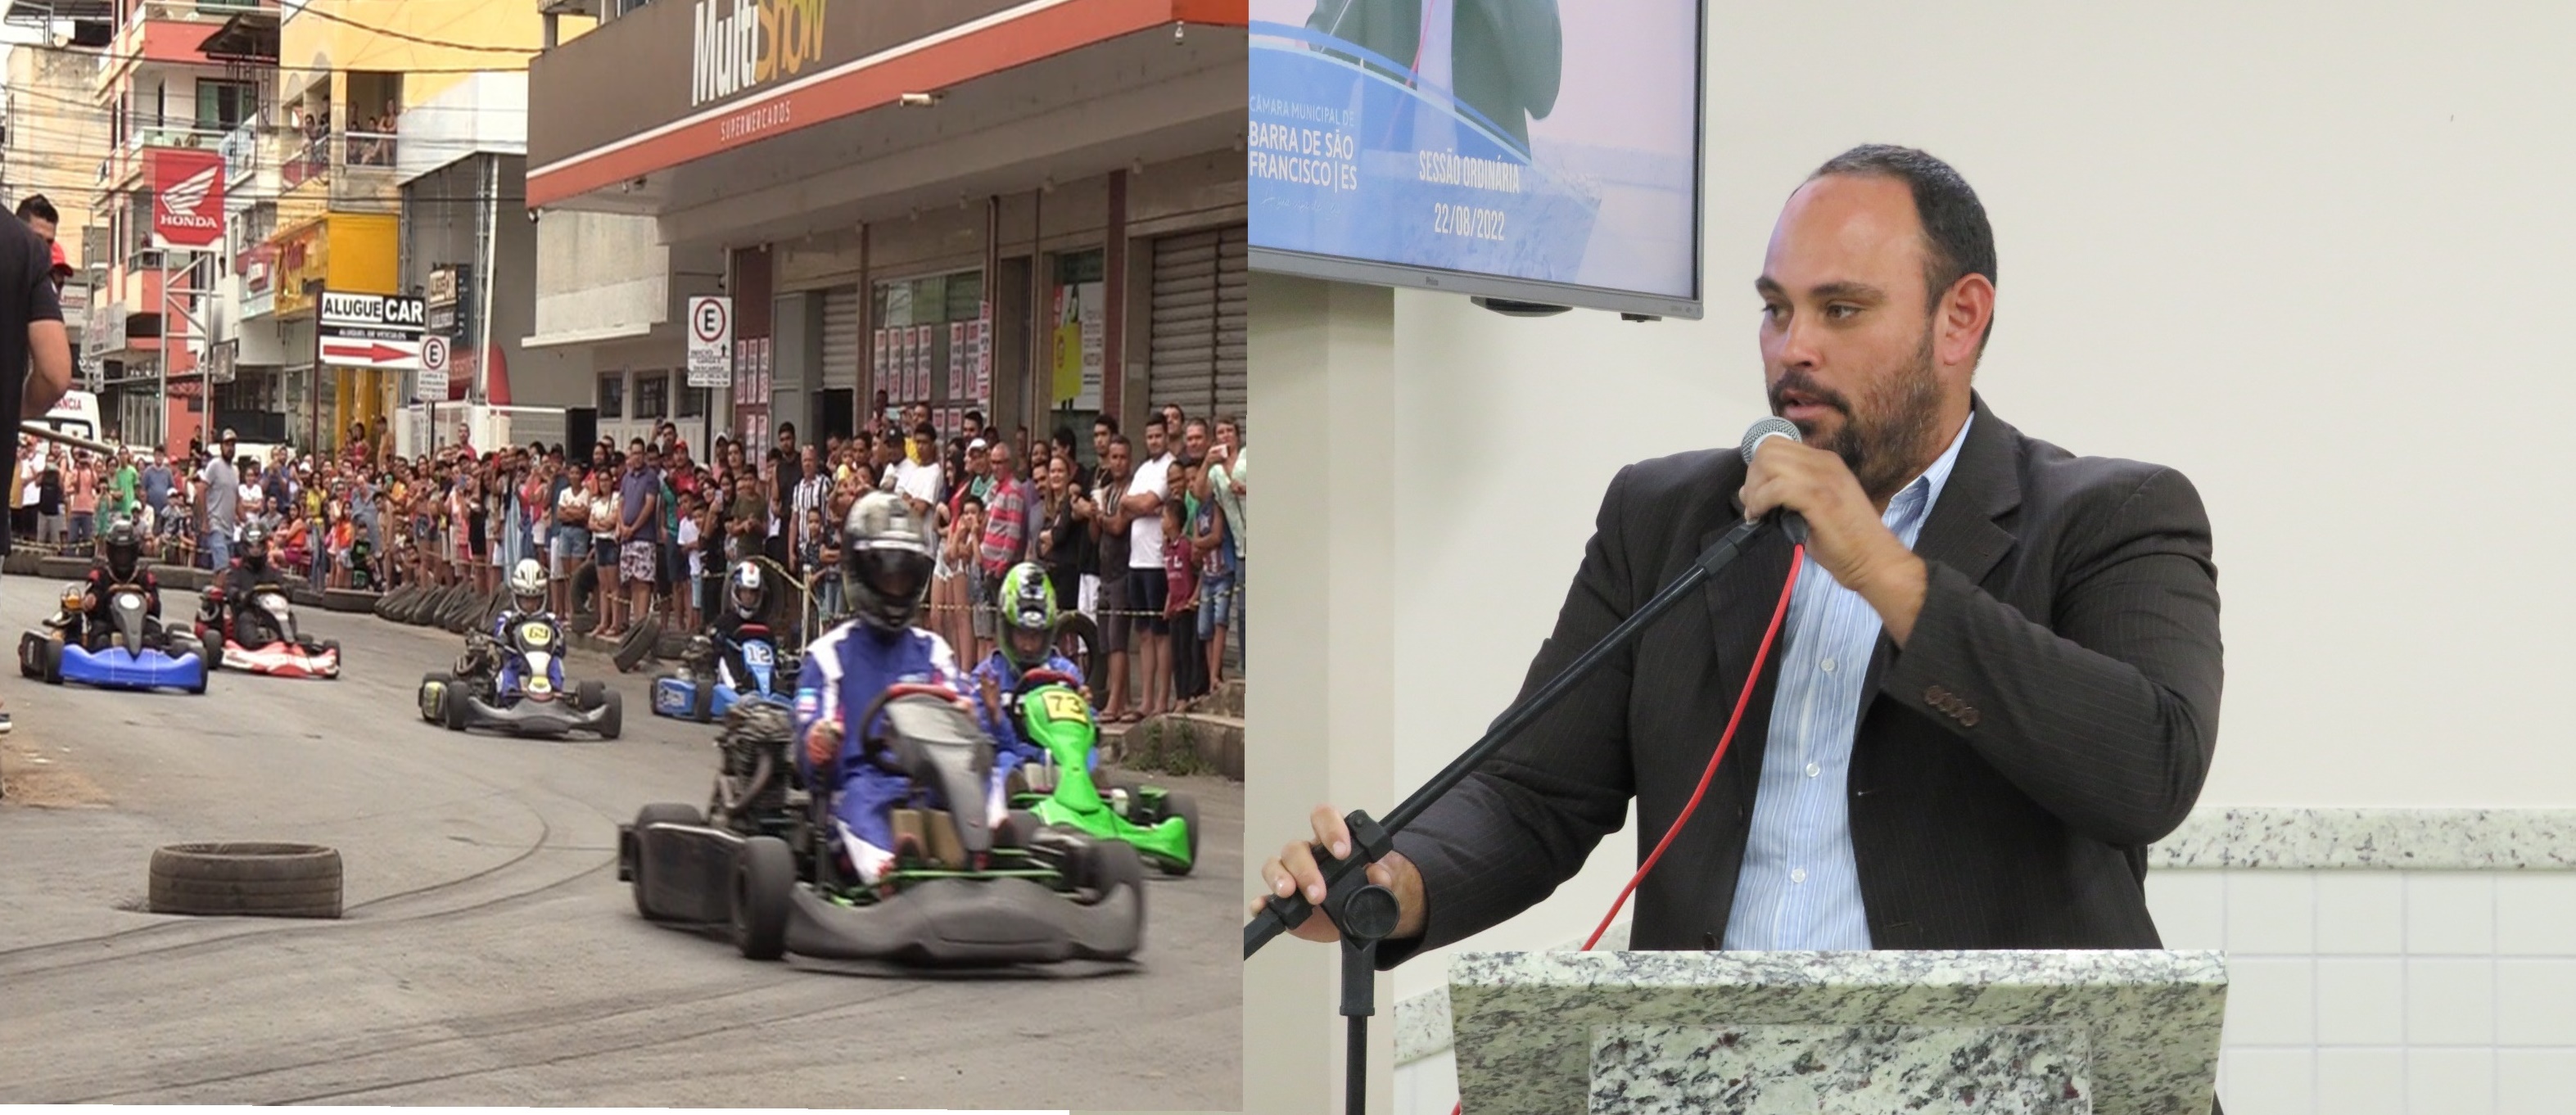  Lemão Vitorino parabeniza Pilotos e Associação de Kart